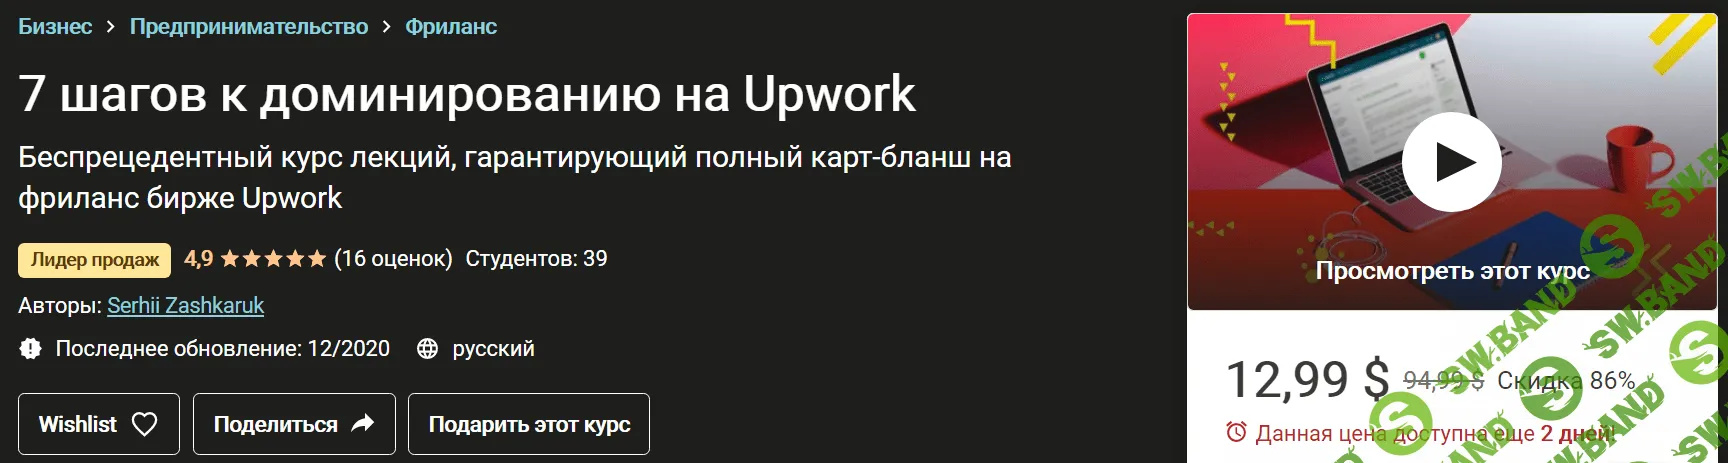 [Сергей Зашкарук] 7 шагов к полному доминированию на Upwork (2020)